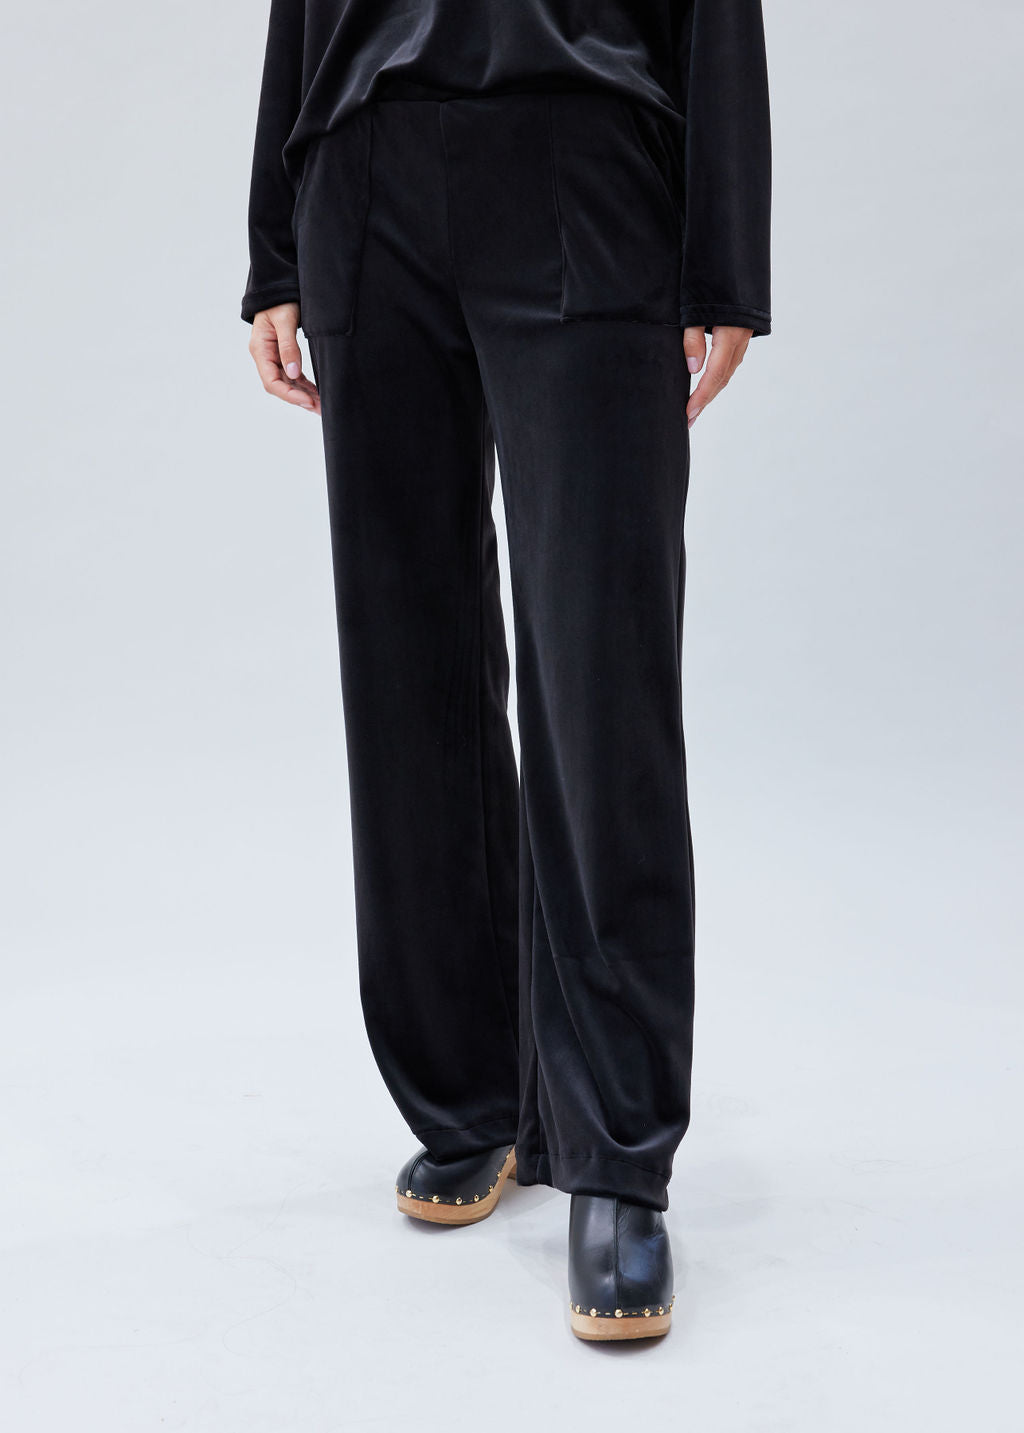 Pantalon velours éponge Noir 1 | Vêtements Femme Lauren Vidal